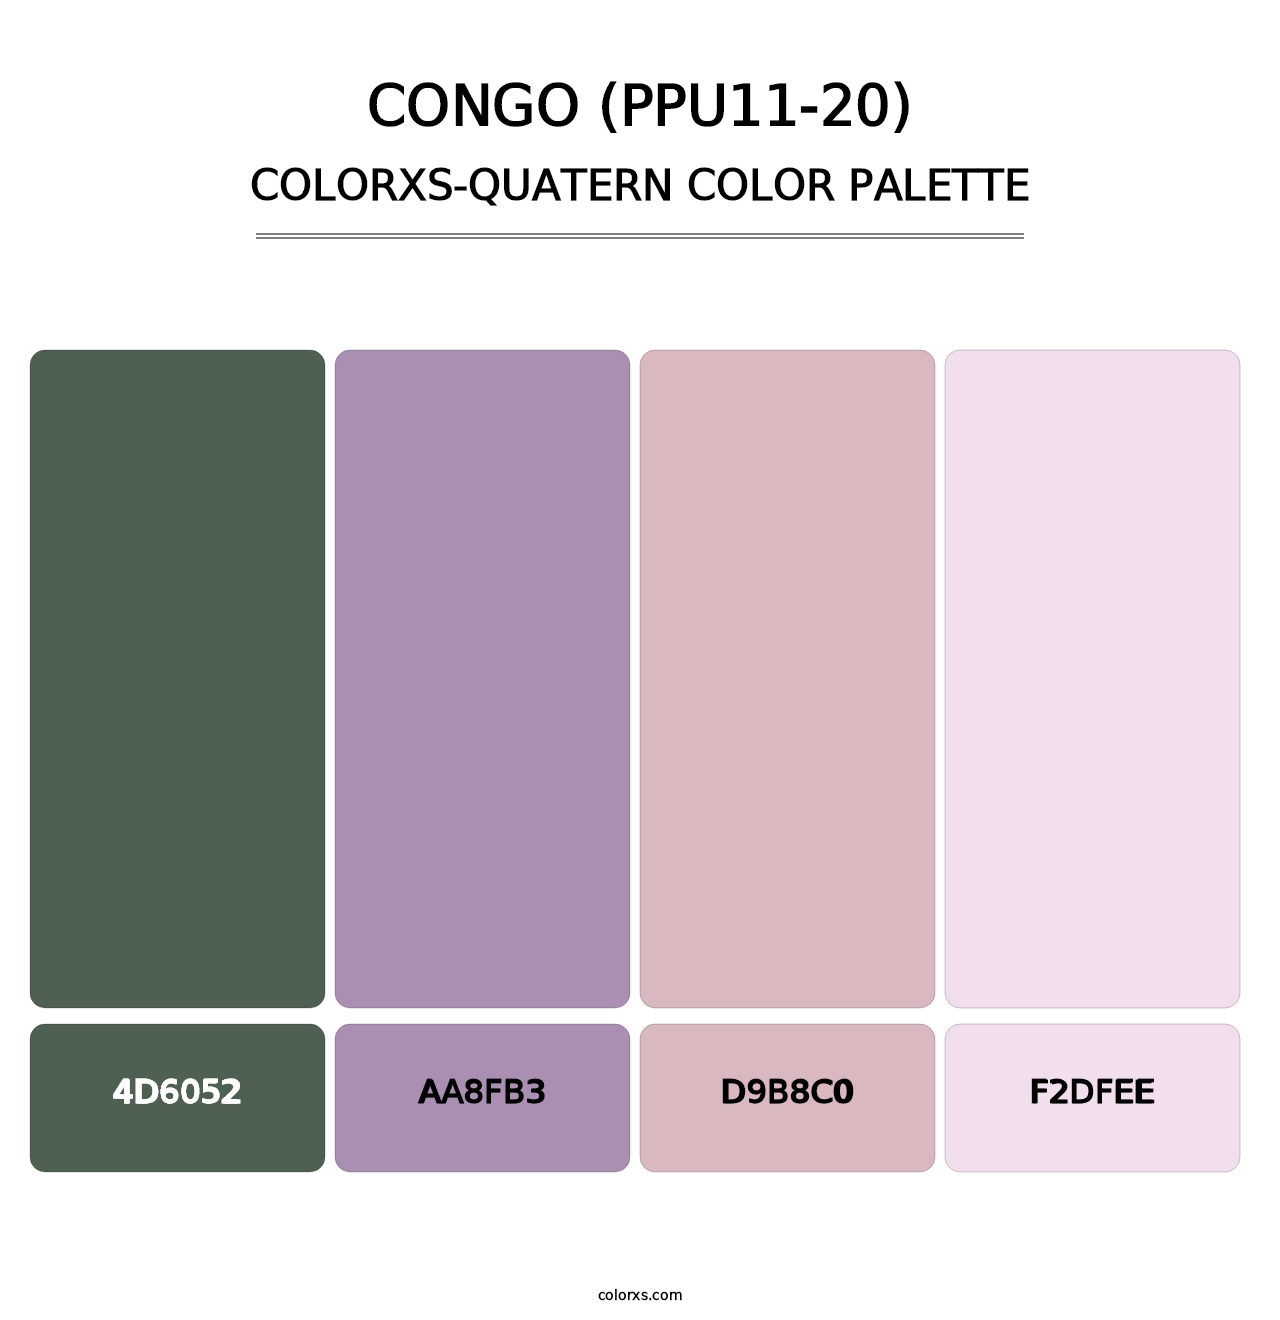 Congo (PPU11-20) - Colorxs Quatern Palette